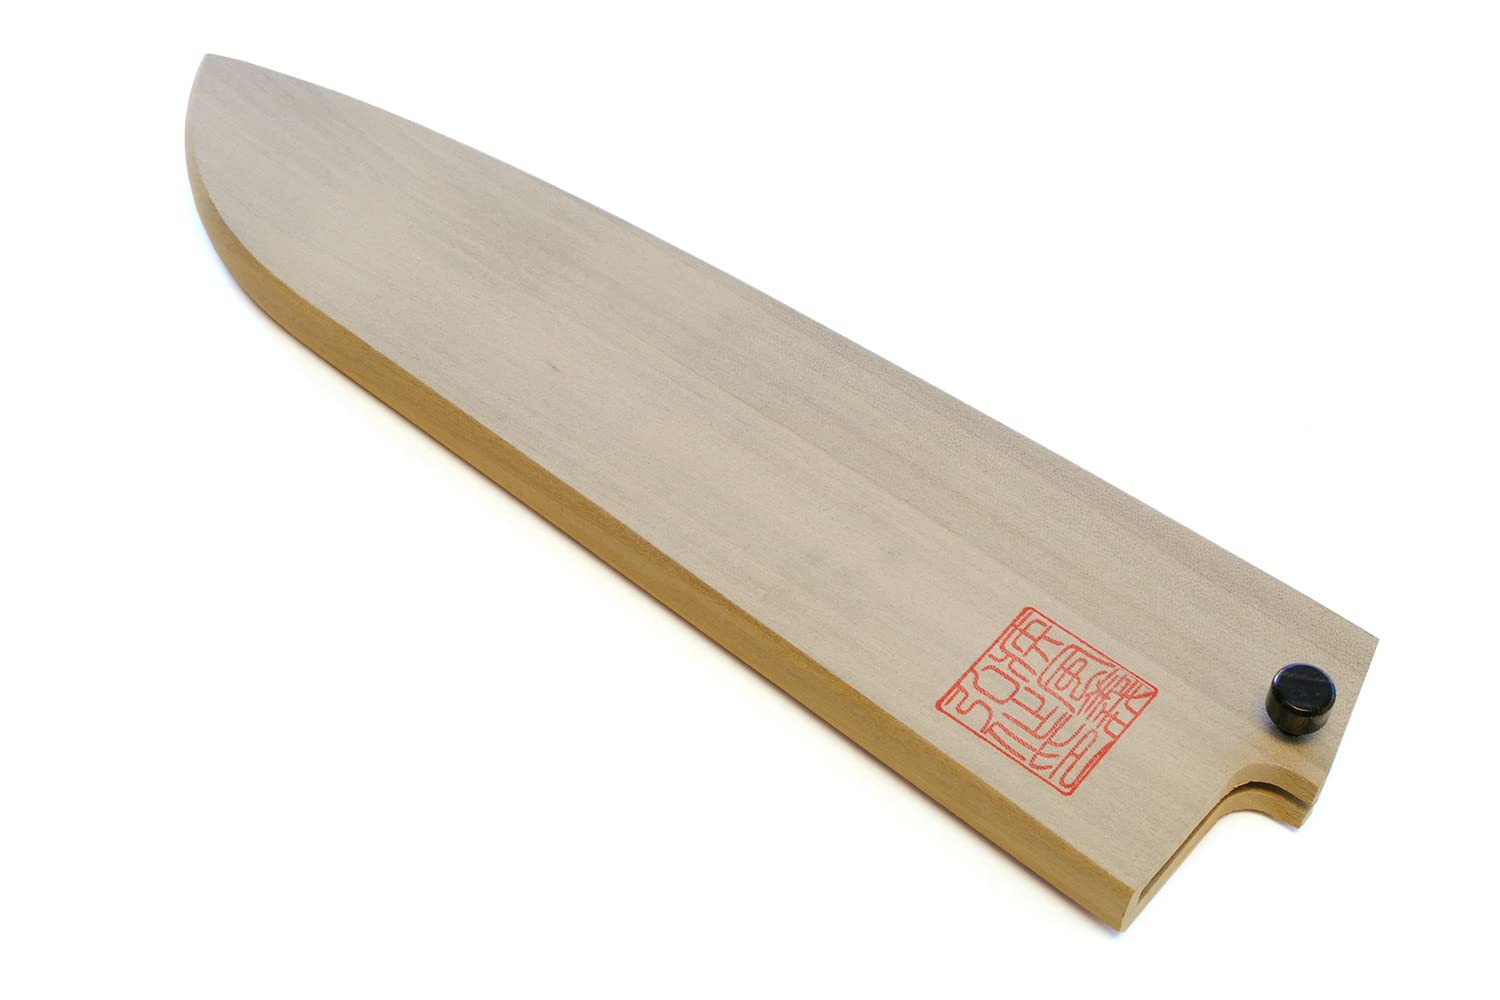 Yoshihiro Natural Magnolia Wood Saya Cover Blade Protector for Santoku (180mm)7in